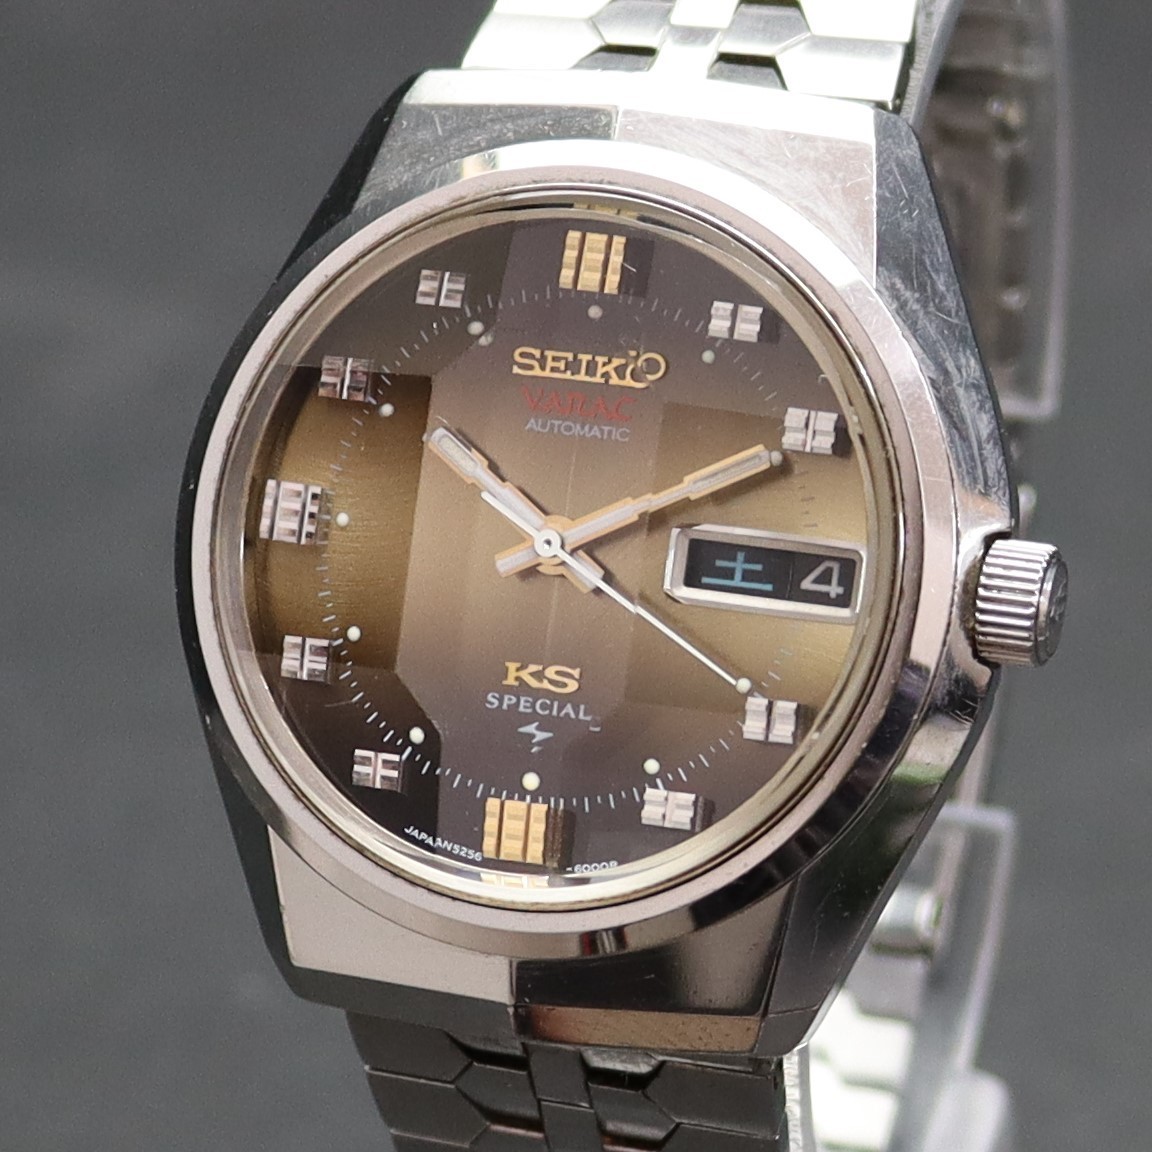 良品 SEIKO KS VANAC キングセイコー バナック スペシャル 自動巻 5256-6000 カットガラス ブラウン文字盤 1973年  純正ブレス メンズ腕時計